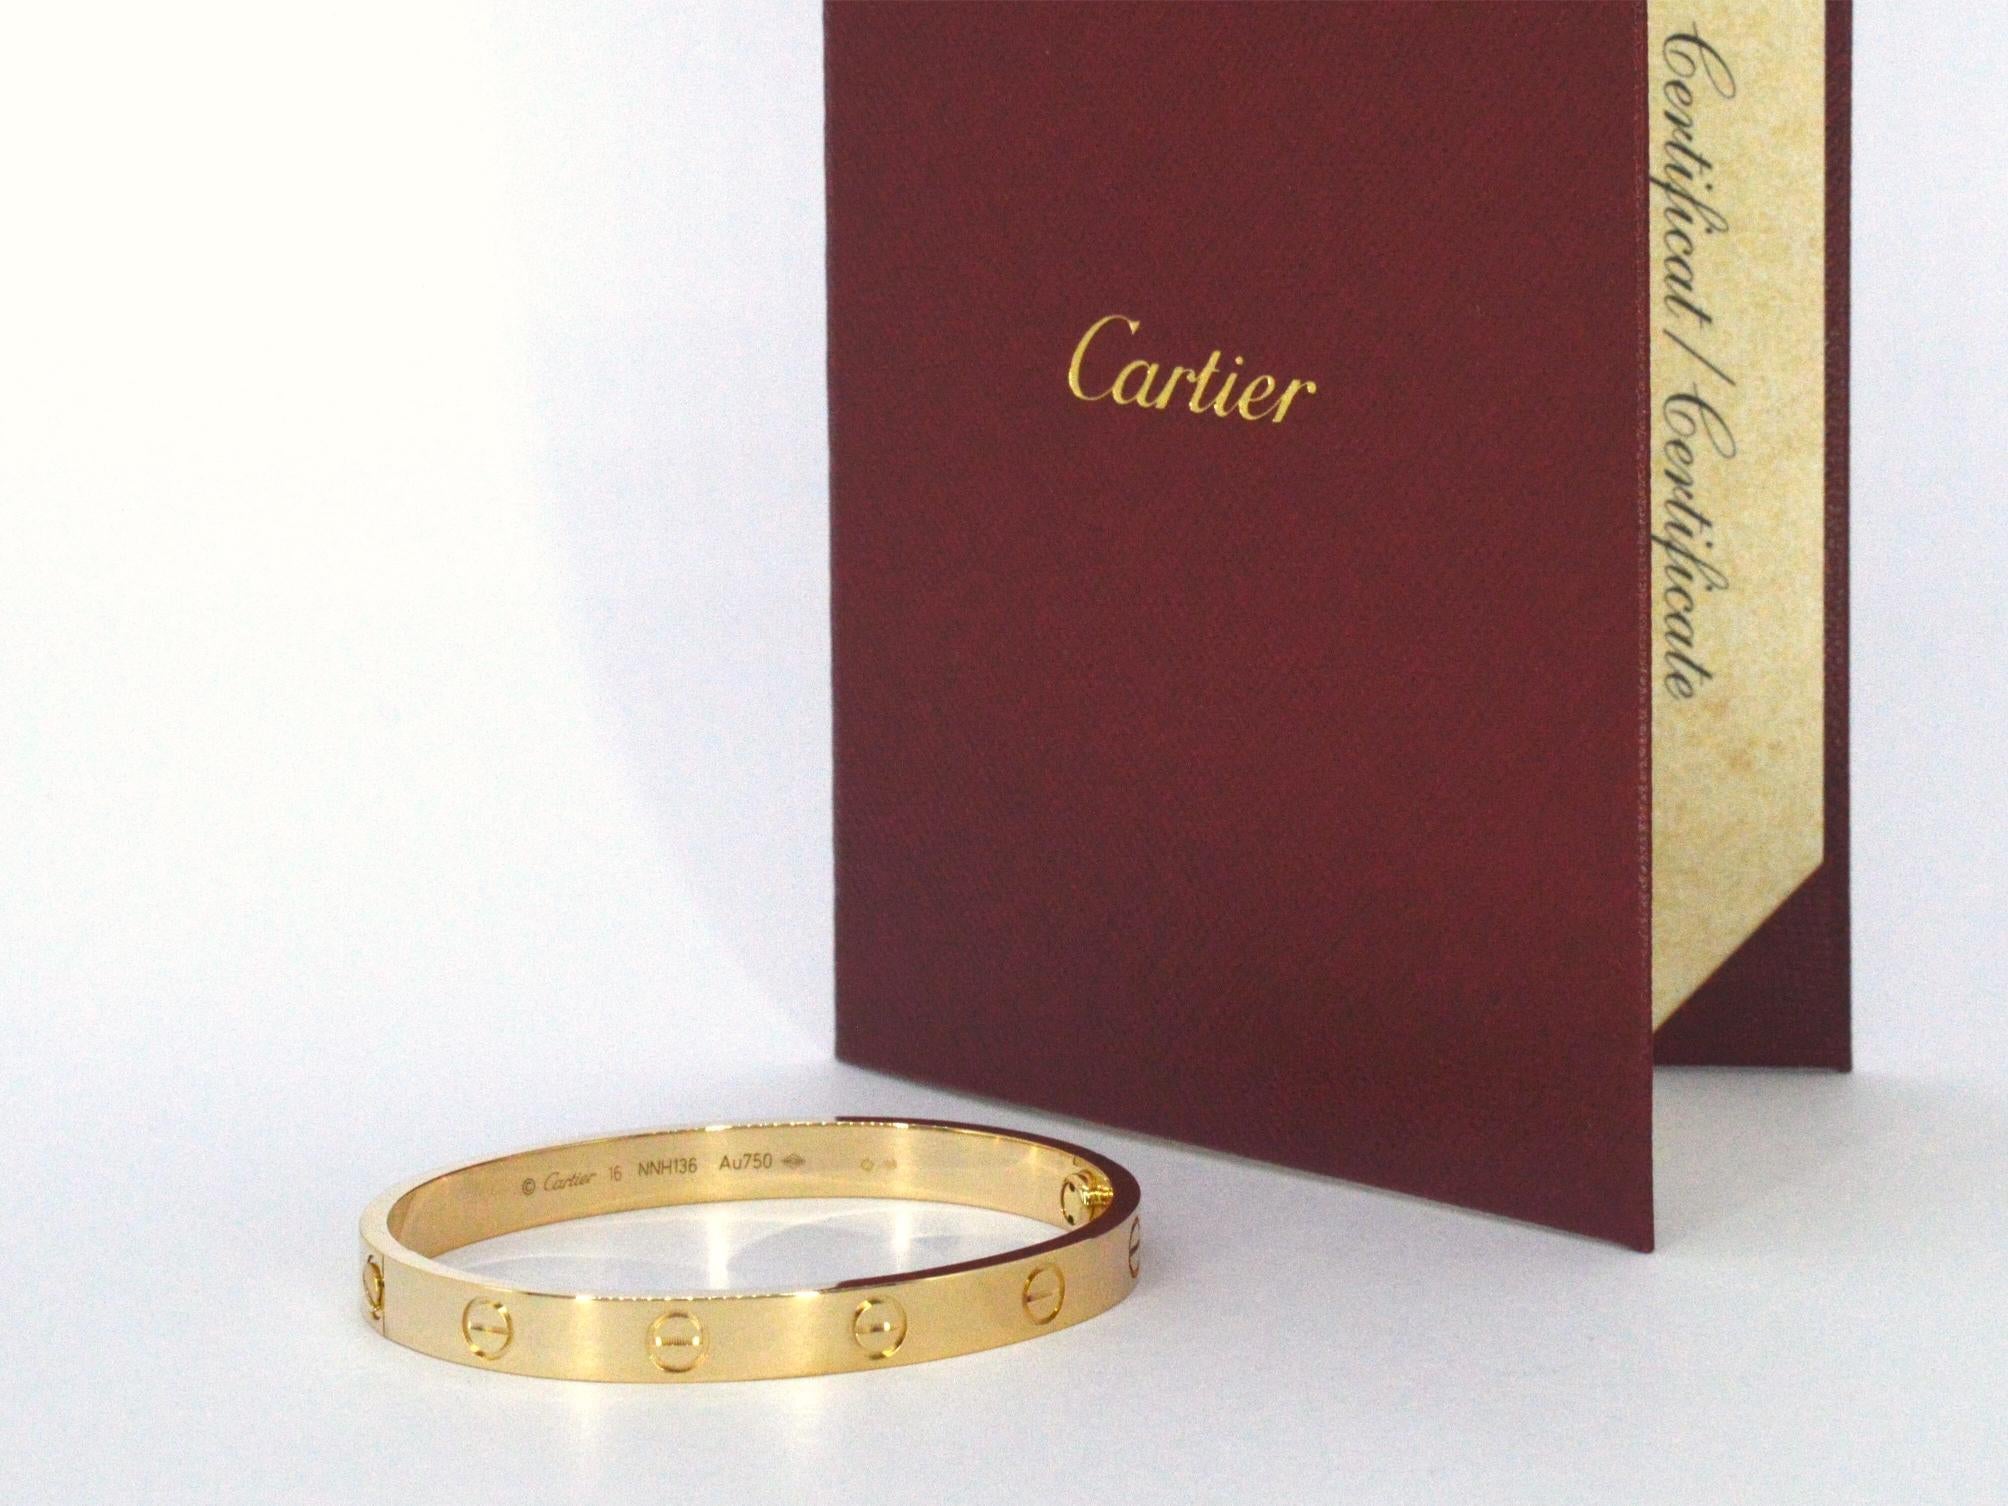 Wir stellen Ihnen ein atemberaubendes Cartier-Liebesarmband mit einem zeitlosen Design vor, das für Eleganz und Luxus steht. Dieses Armband wird komplett mit der Originalschachtel, dem Zertifikat und dem Schraubenzieher geliefert, um die Echtheit